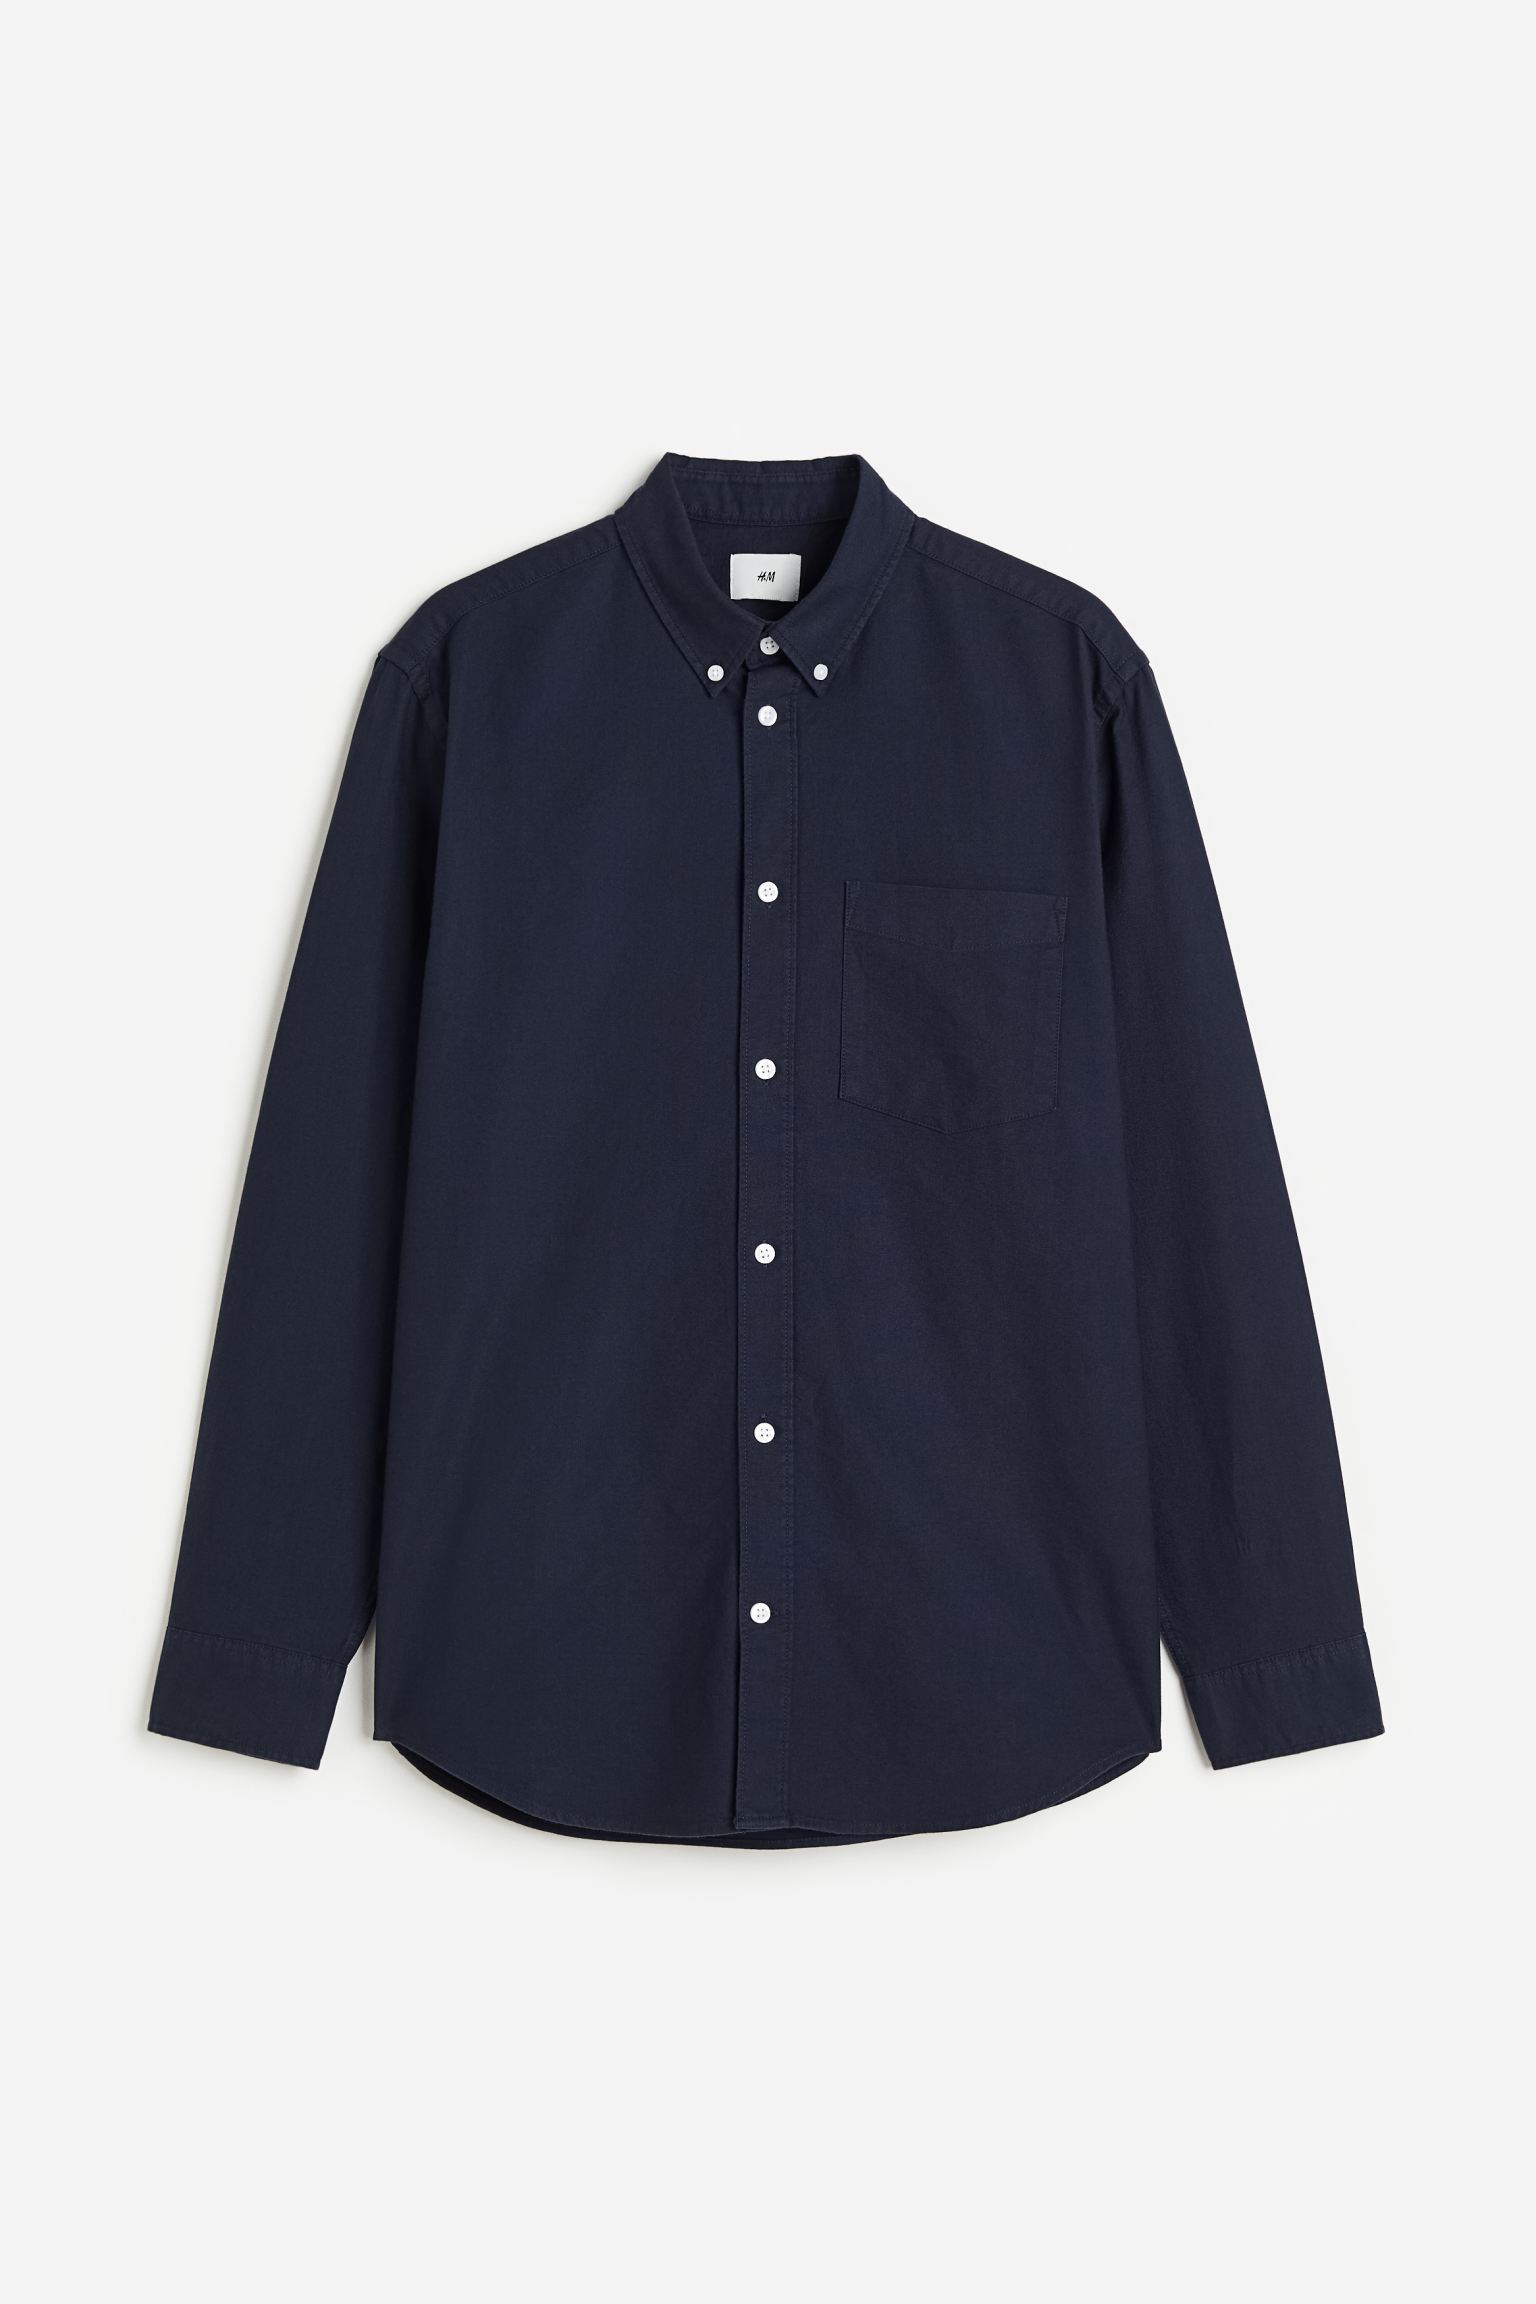 Рубашка мужская H&M 1013956039 синяя L (доставка из-за рубежа)